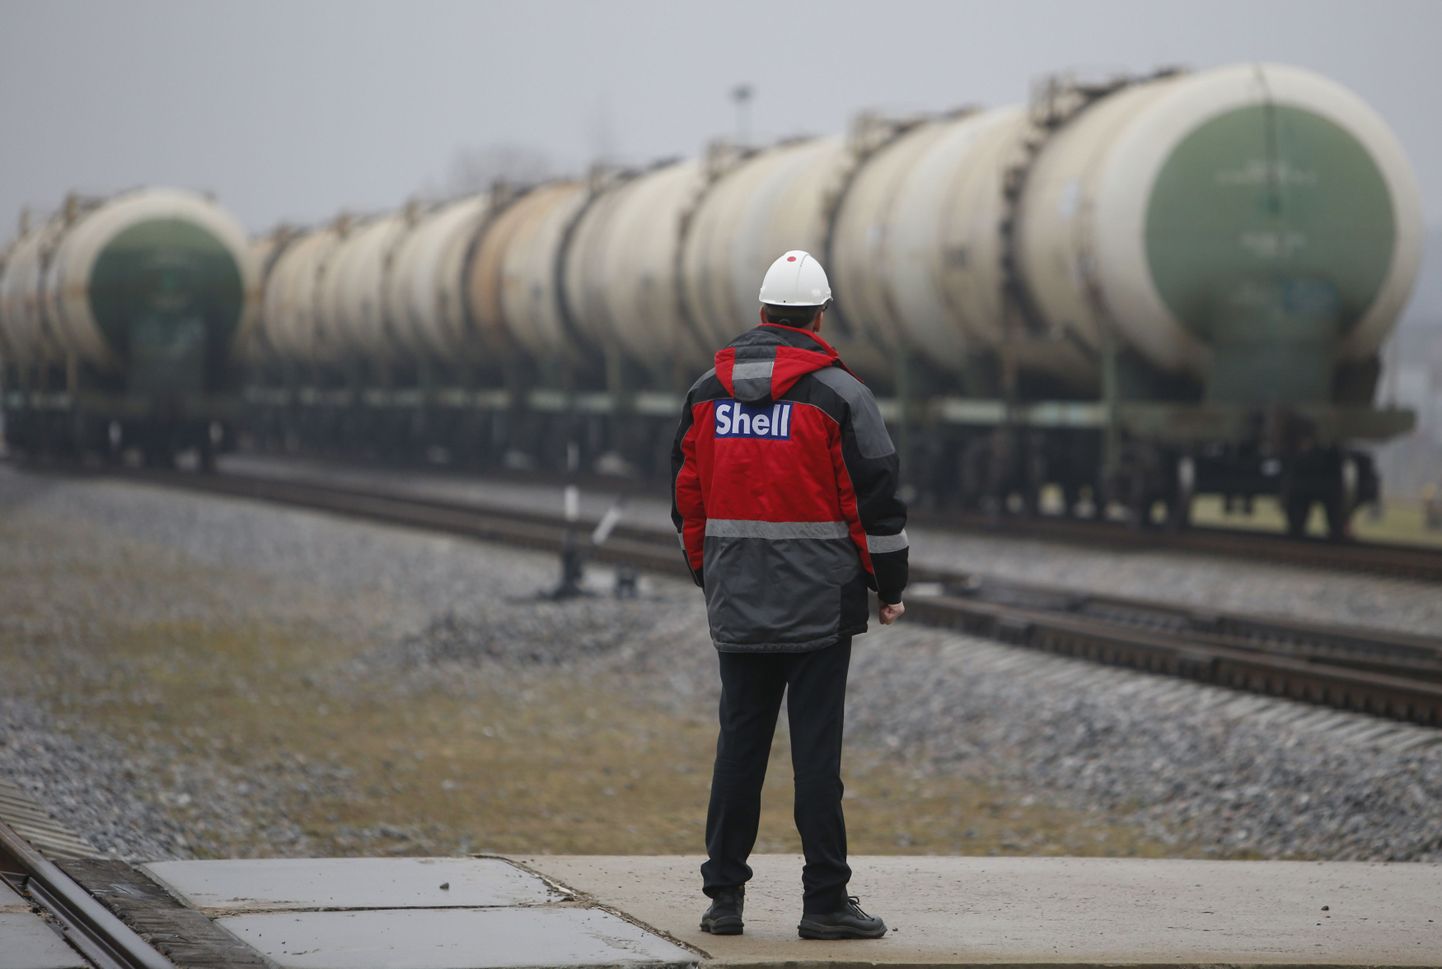 Raudteetsisternid määrdeainetega lahkuvad Royal Dutch Shelli Toržoki tehasest Venemaal Tveri lähedal. Ettevõte on viimasel ajal oma tegevust Vene turul kõvasti kärpinud.